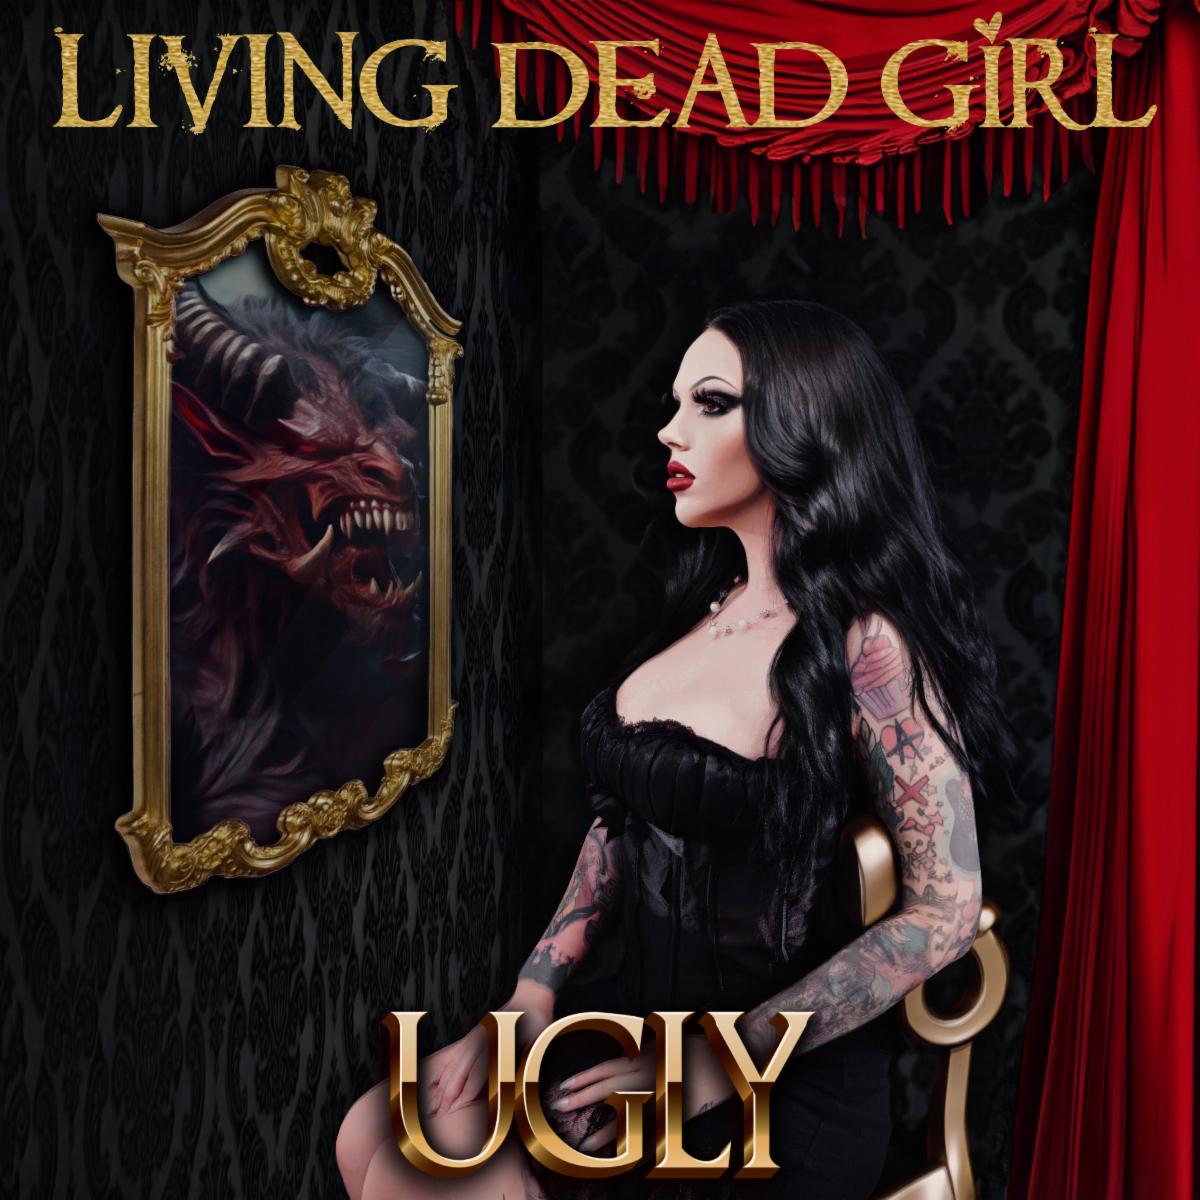 LIVING DEAD GIRL